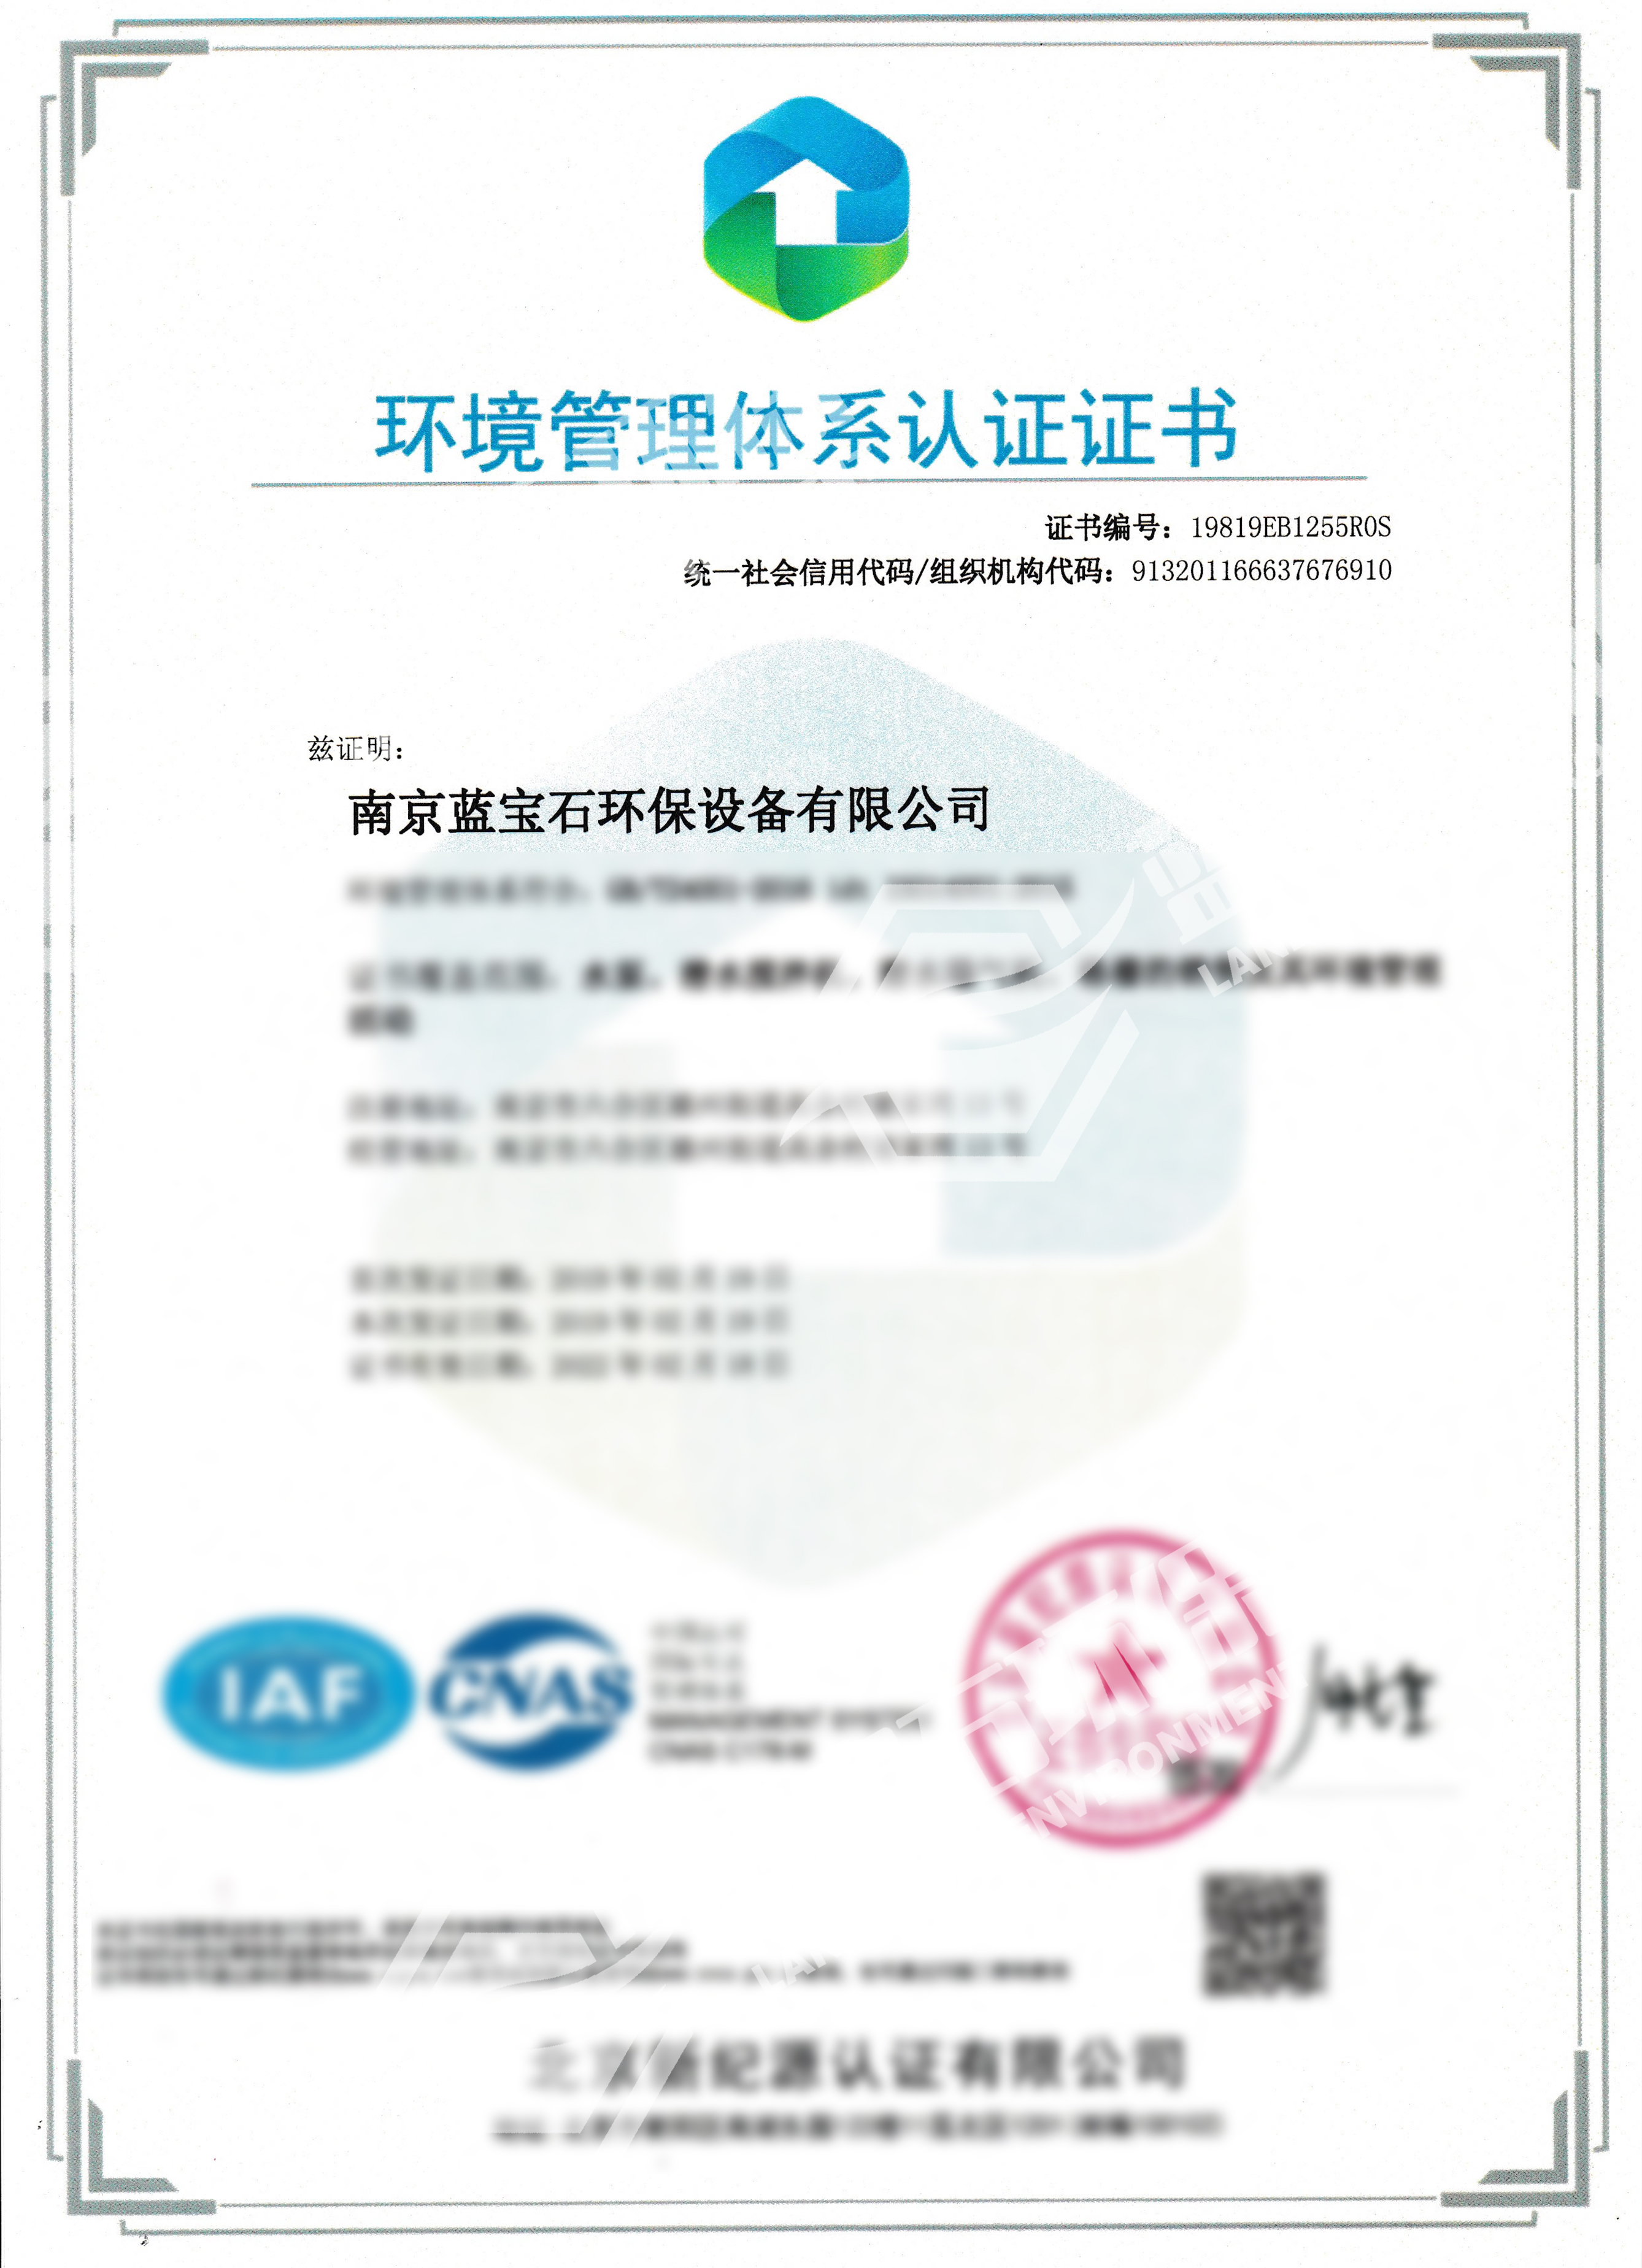 南京藍寶石環保設備有限公司通過ISO14001環境管理體系認證